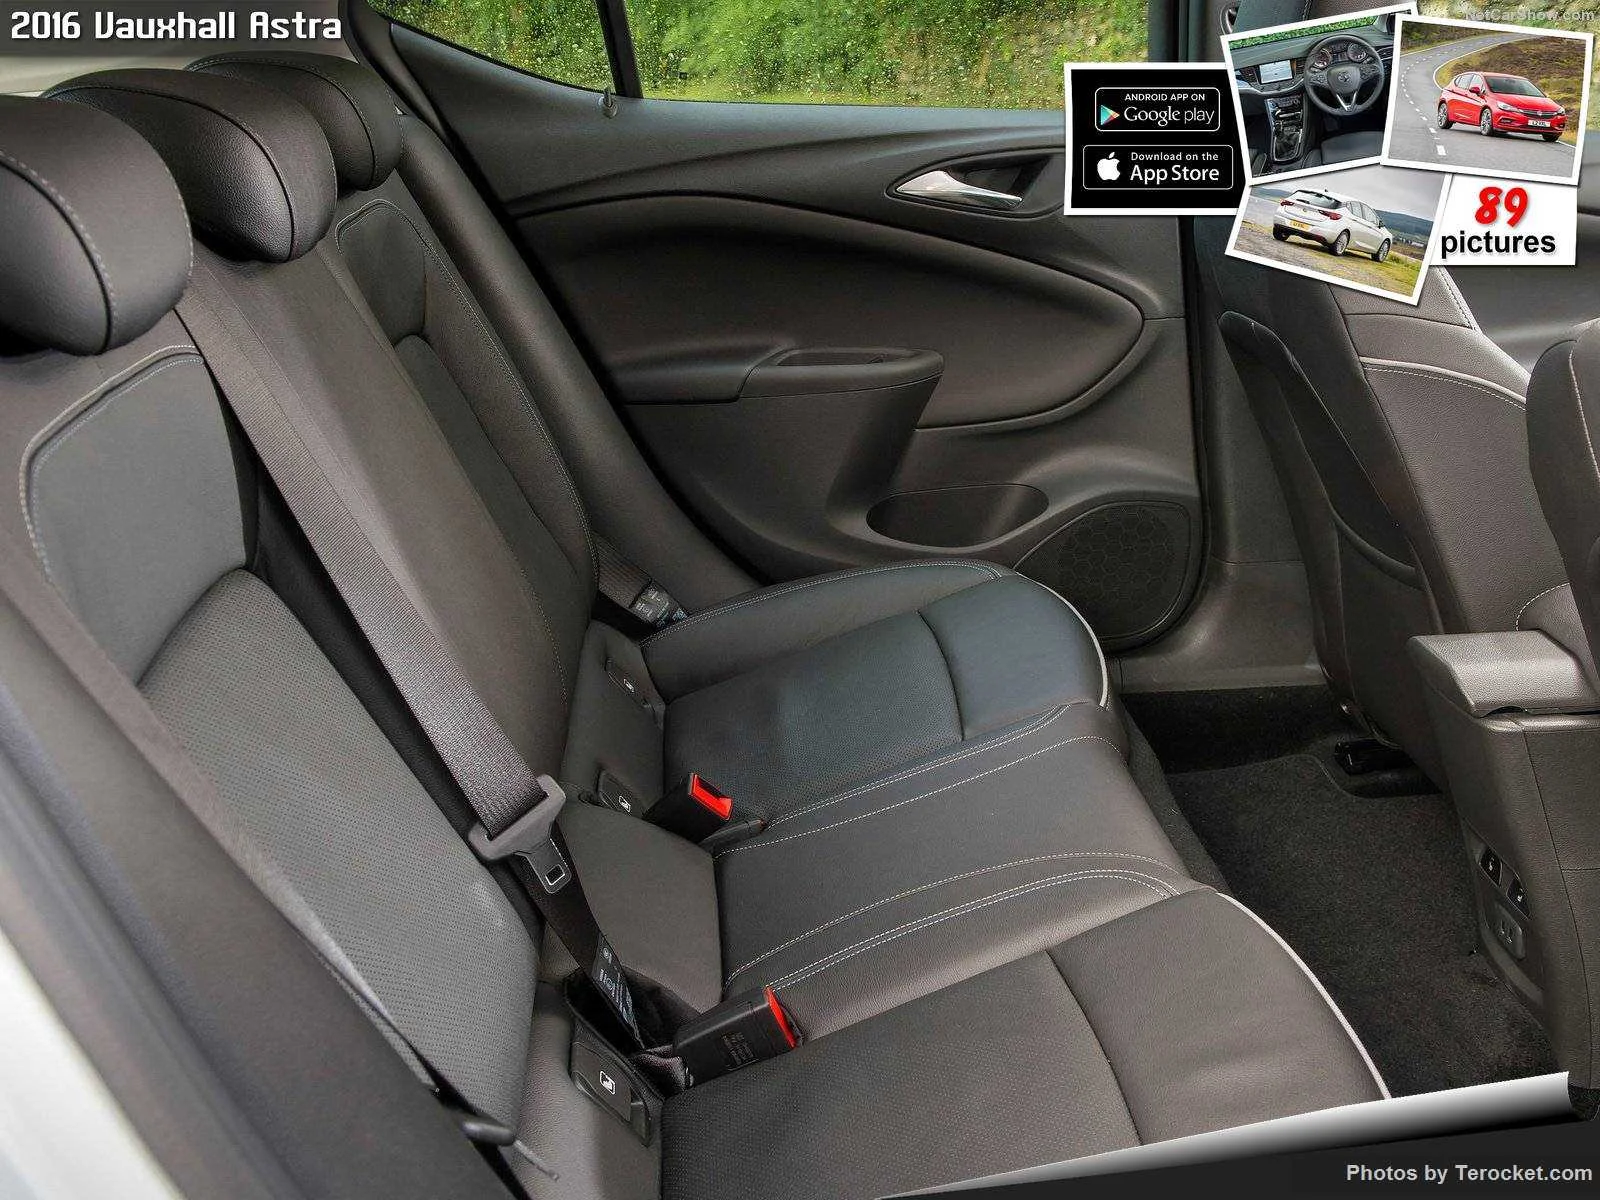 Hình ảnh xe ô tô Vauxhall Astra 2016 & nội ngoại thất